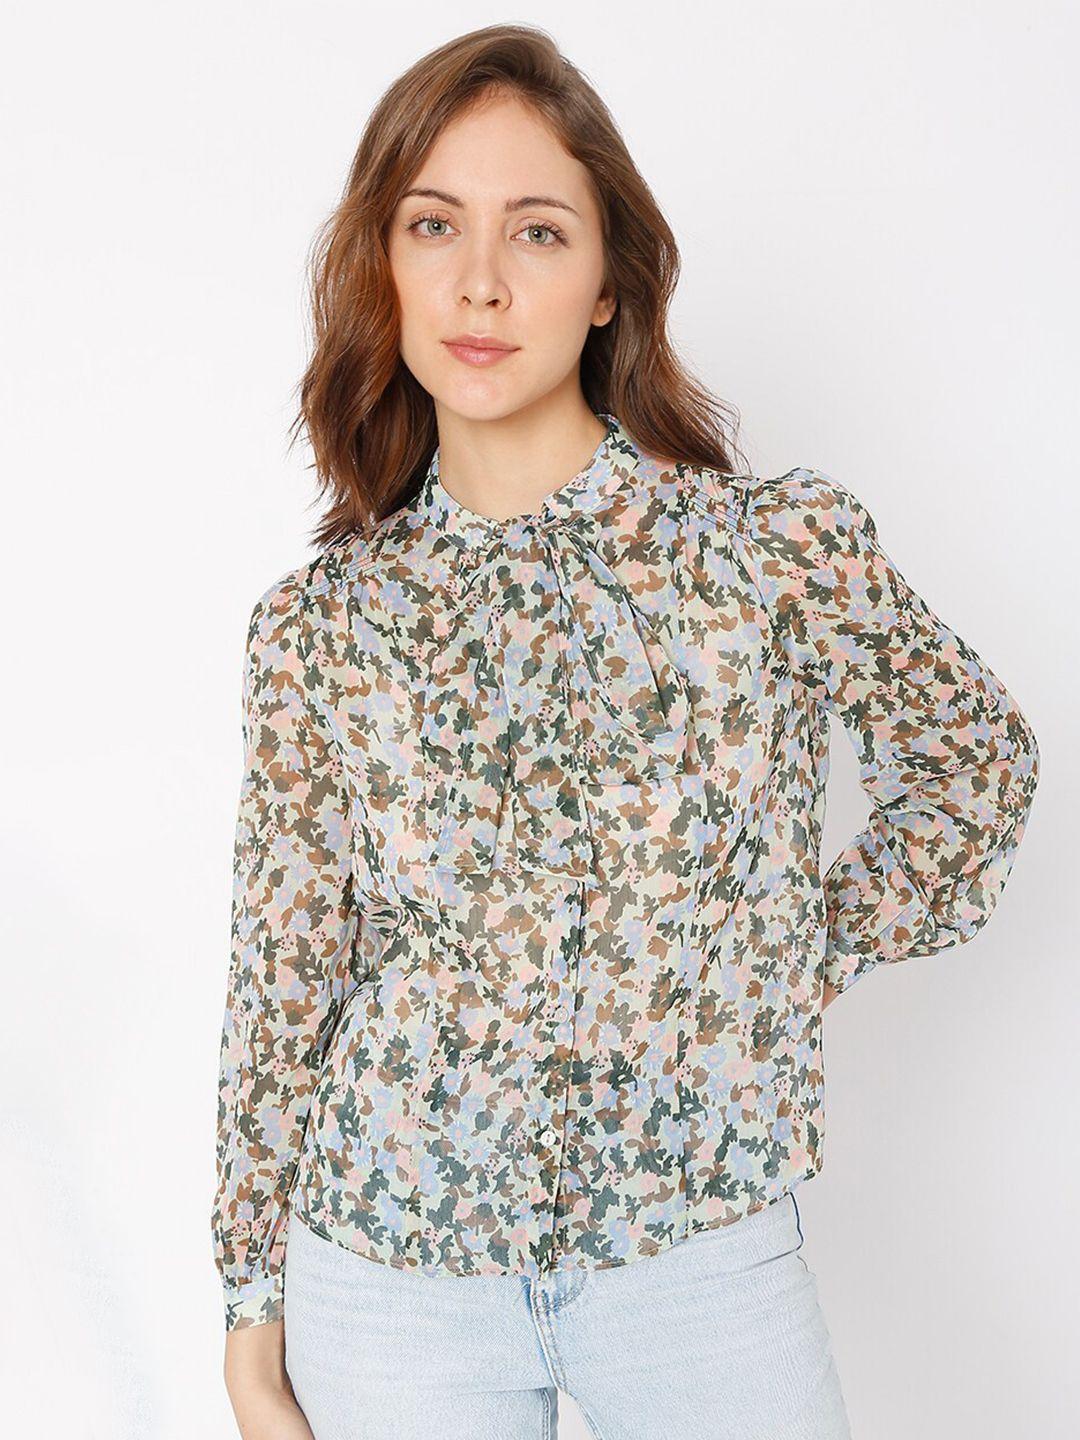 vero moda multicoloured floral print shirt style top